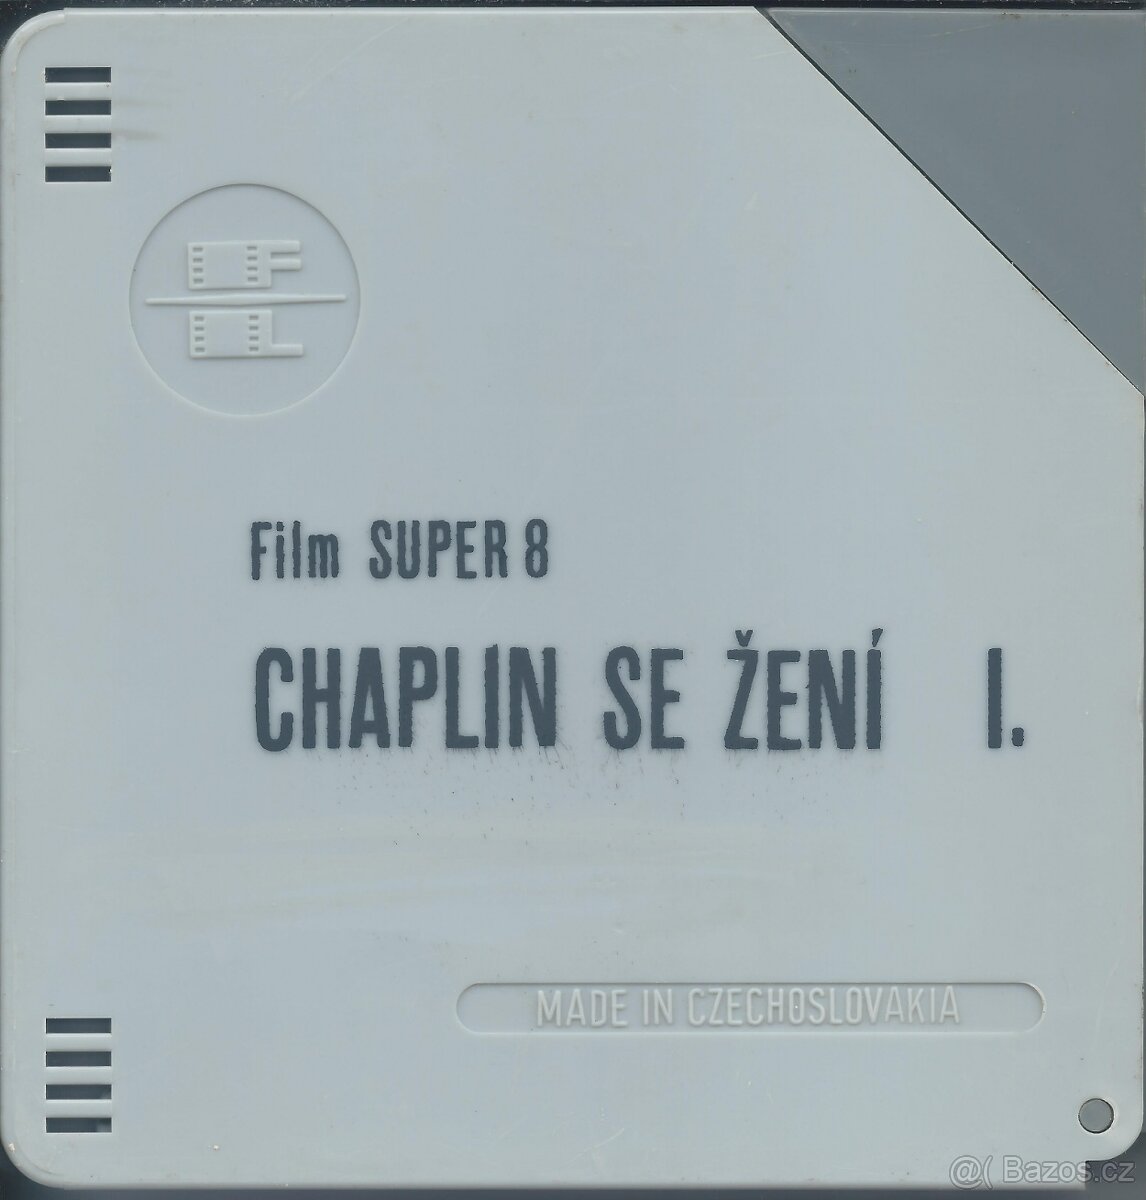 Chaplin se žení I. 8 mm